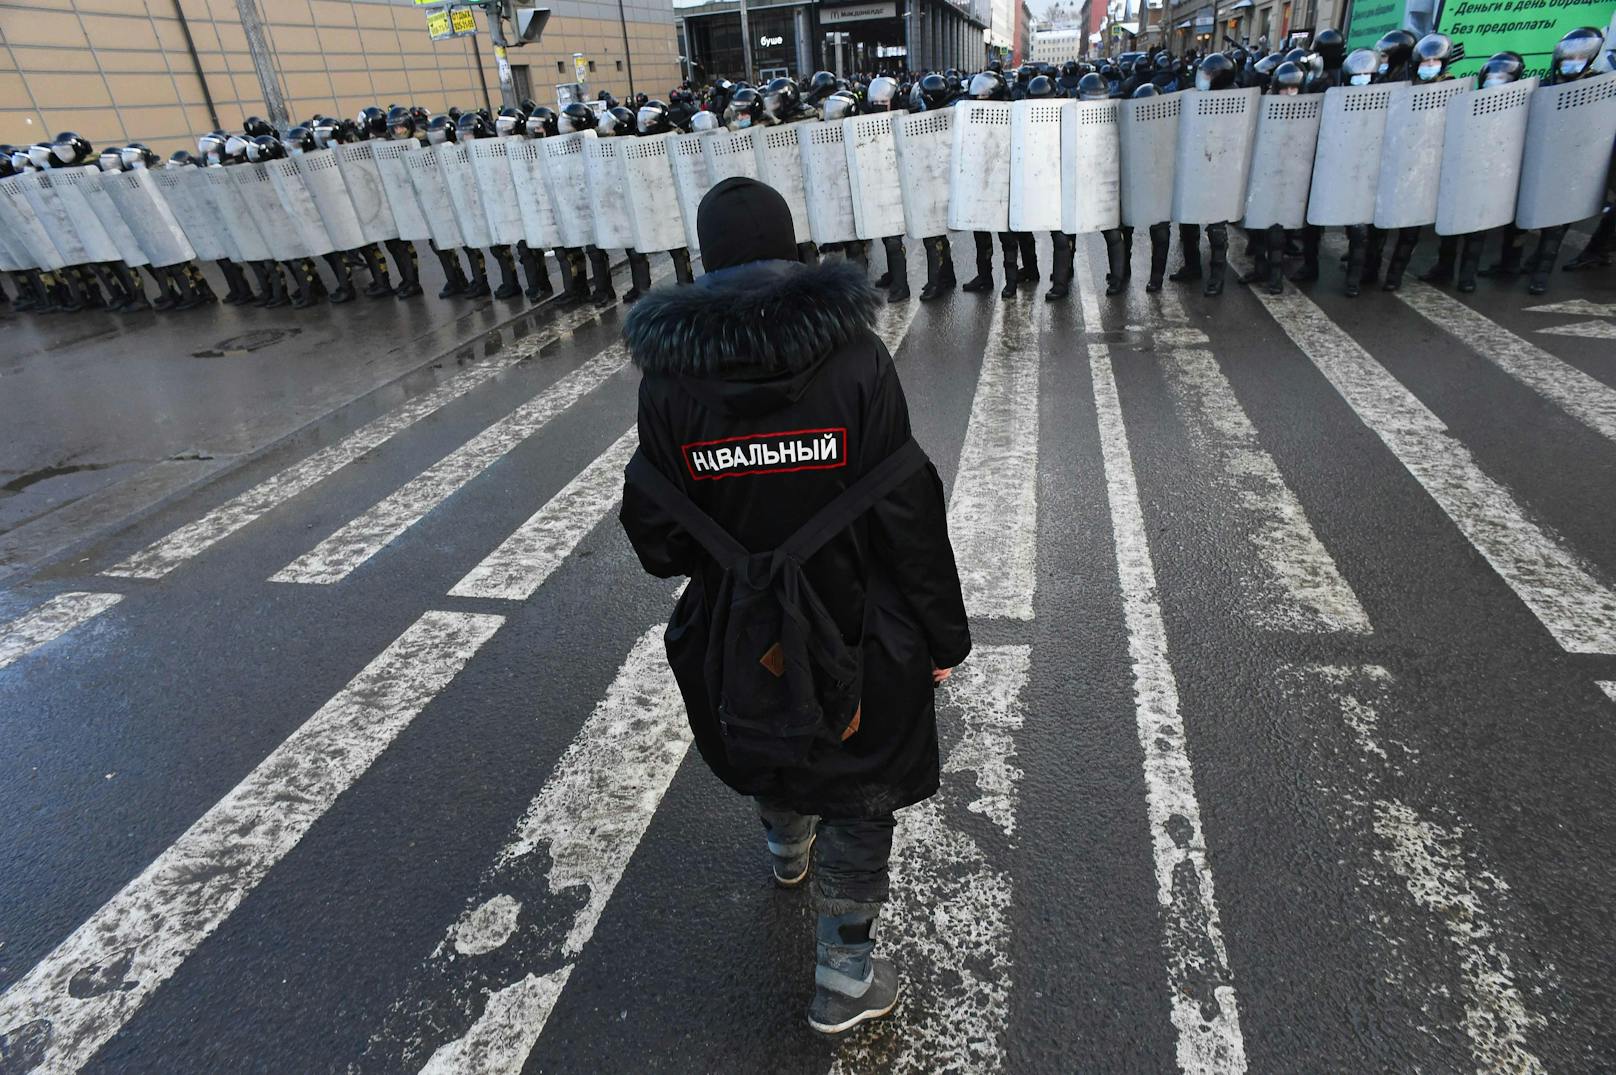 Auf der Jacke des Demonstranten steht "Nawalny".&nbsp;